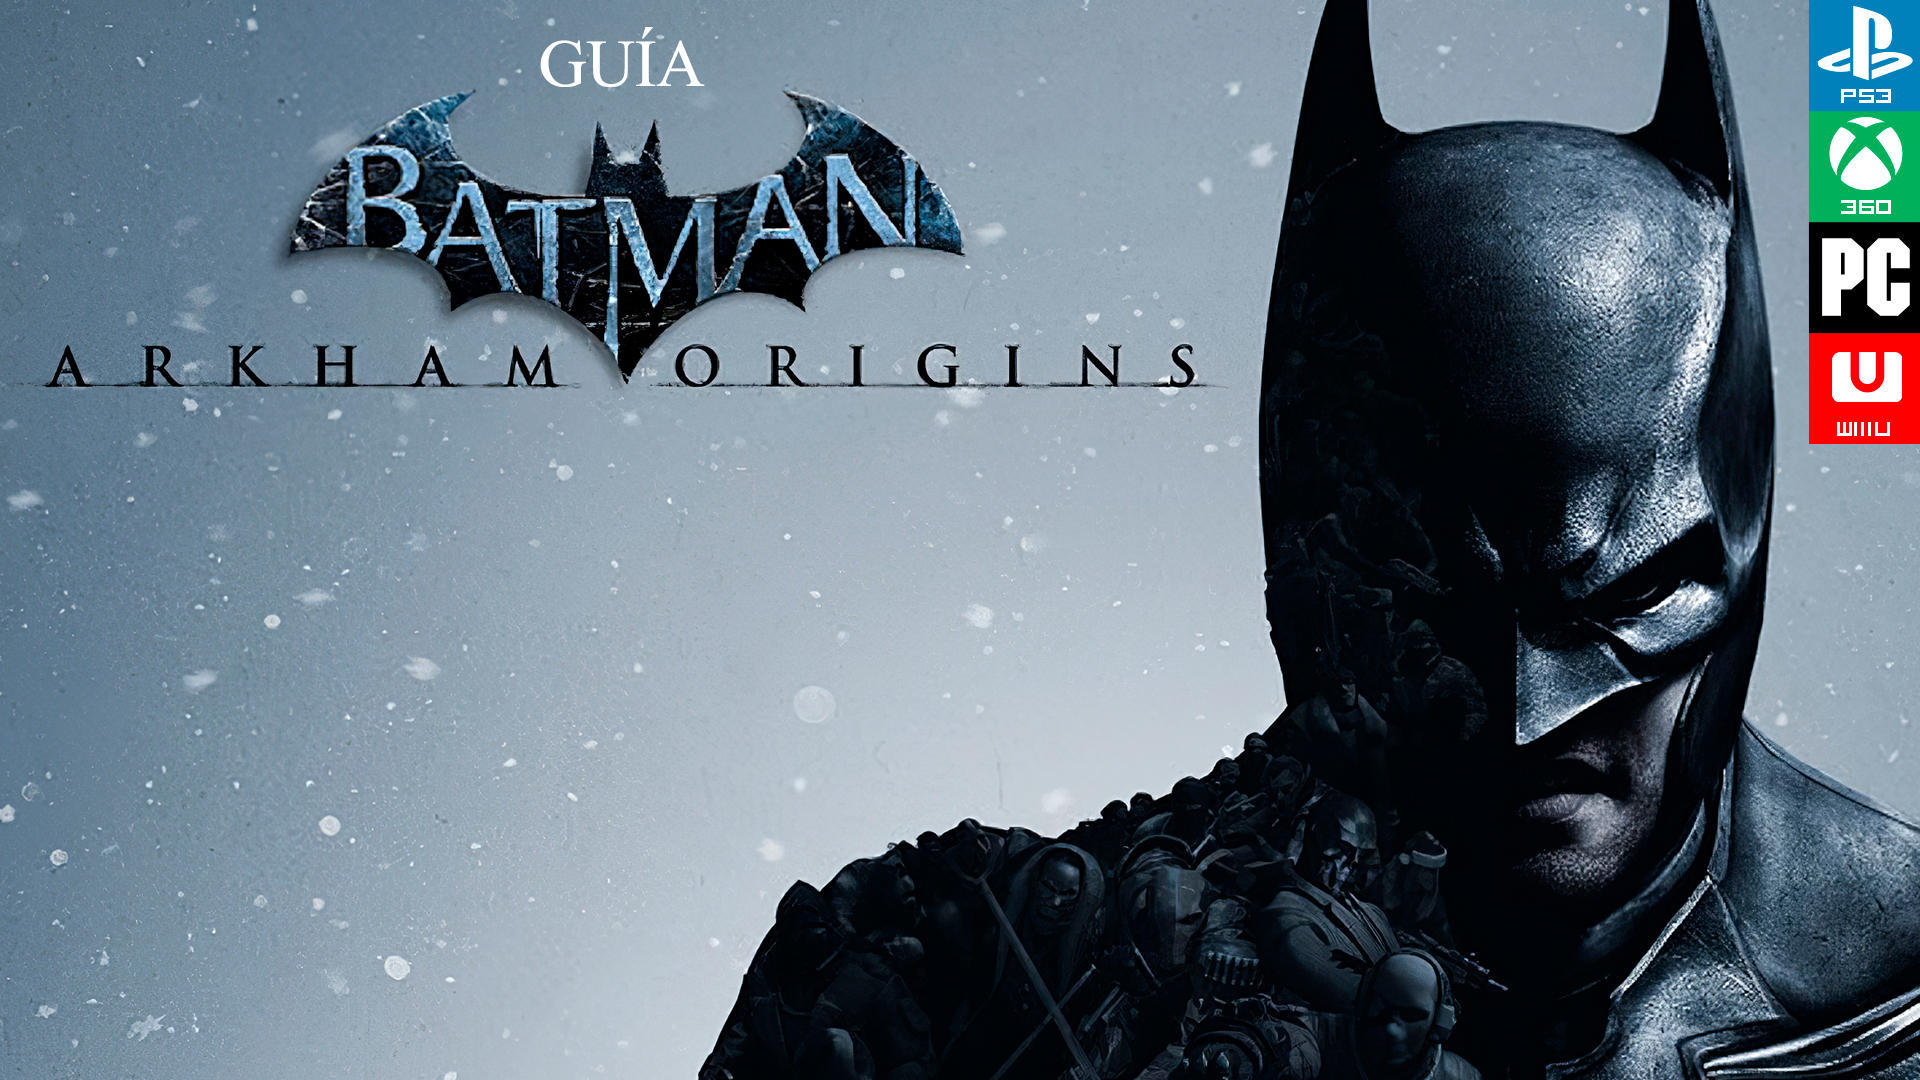 El sombrerero Batman Arkham Origins - Guía